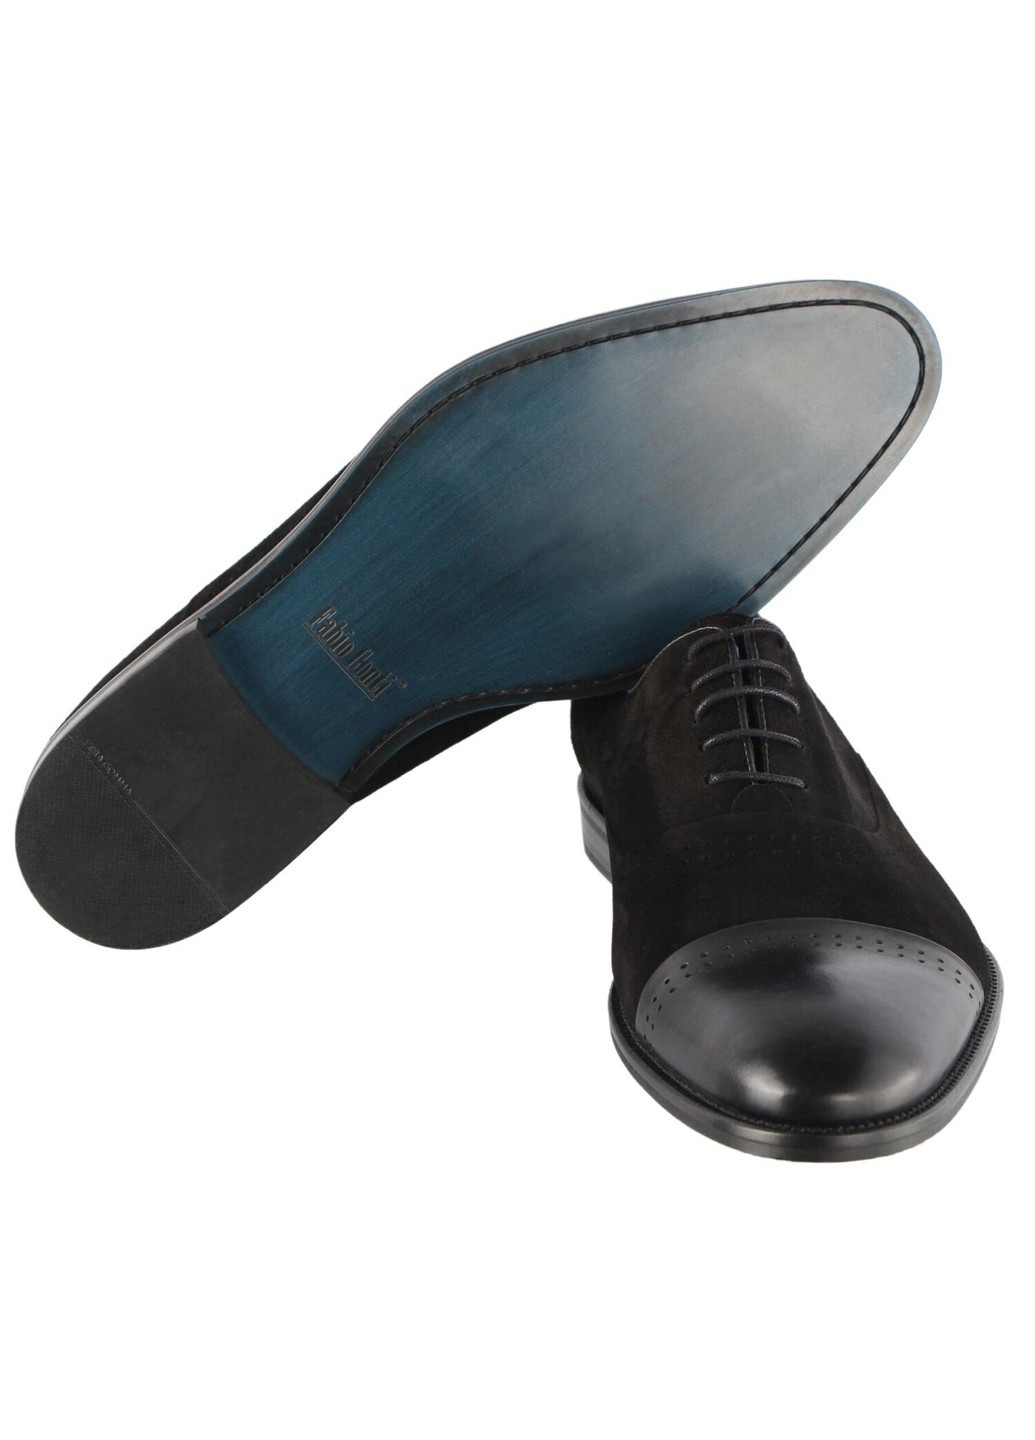 Черные мужские классические туфли 5773 Conhpol на шнурках